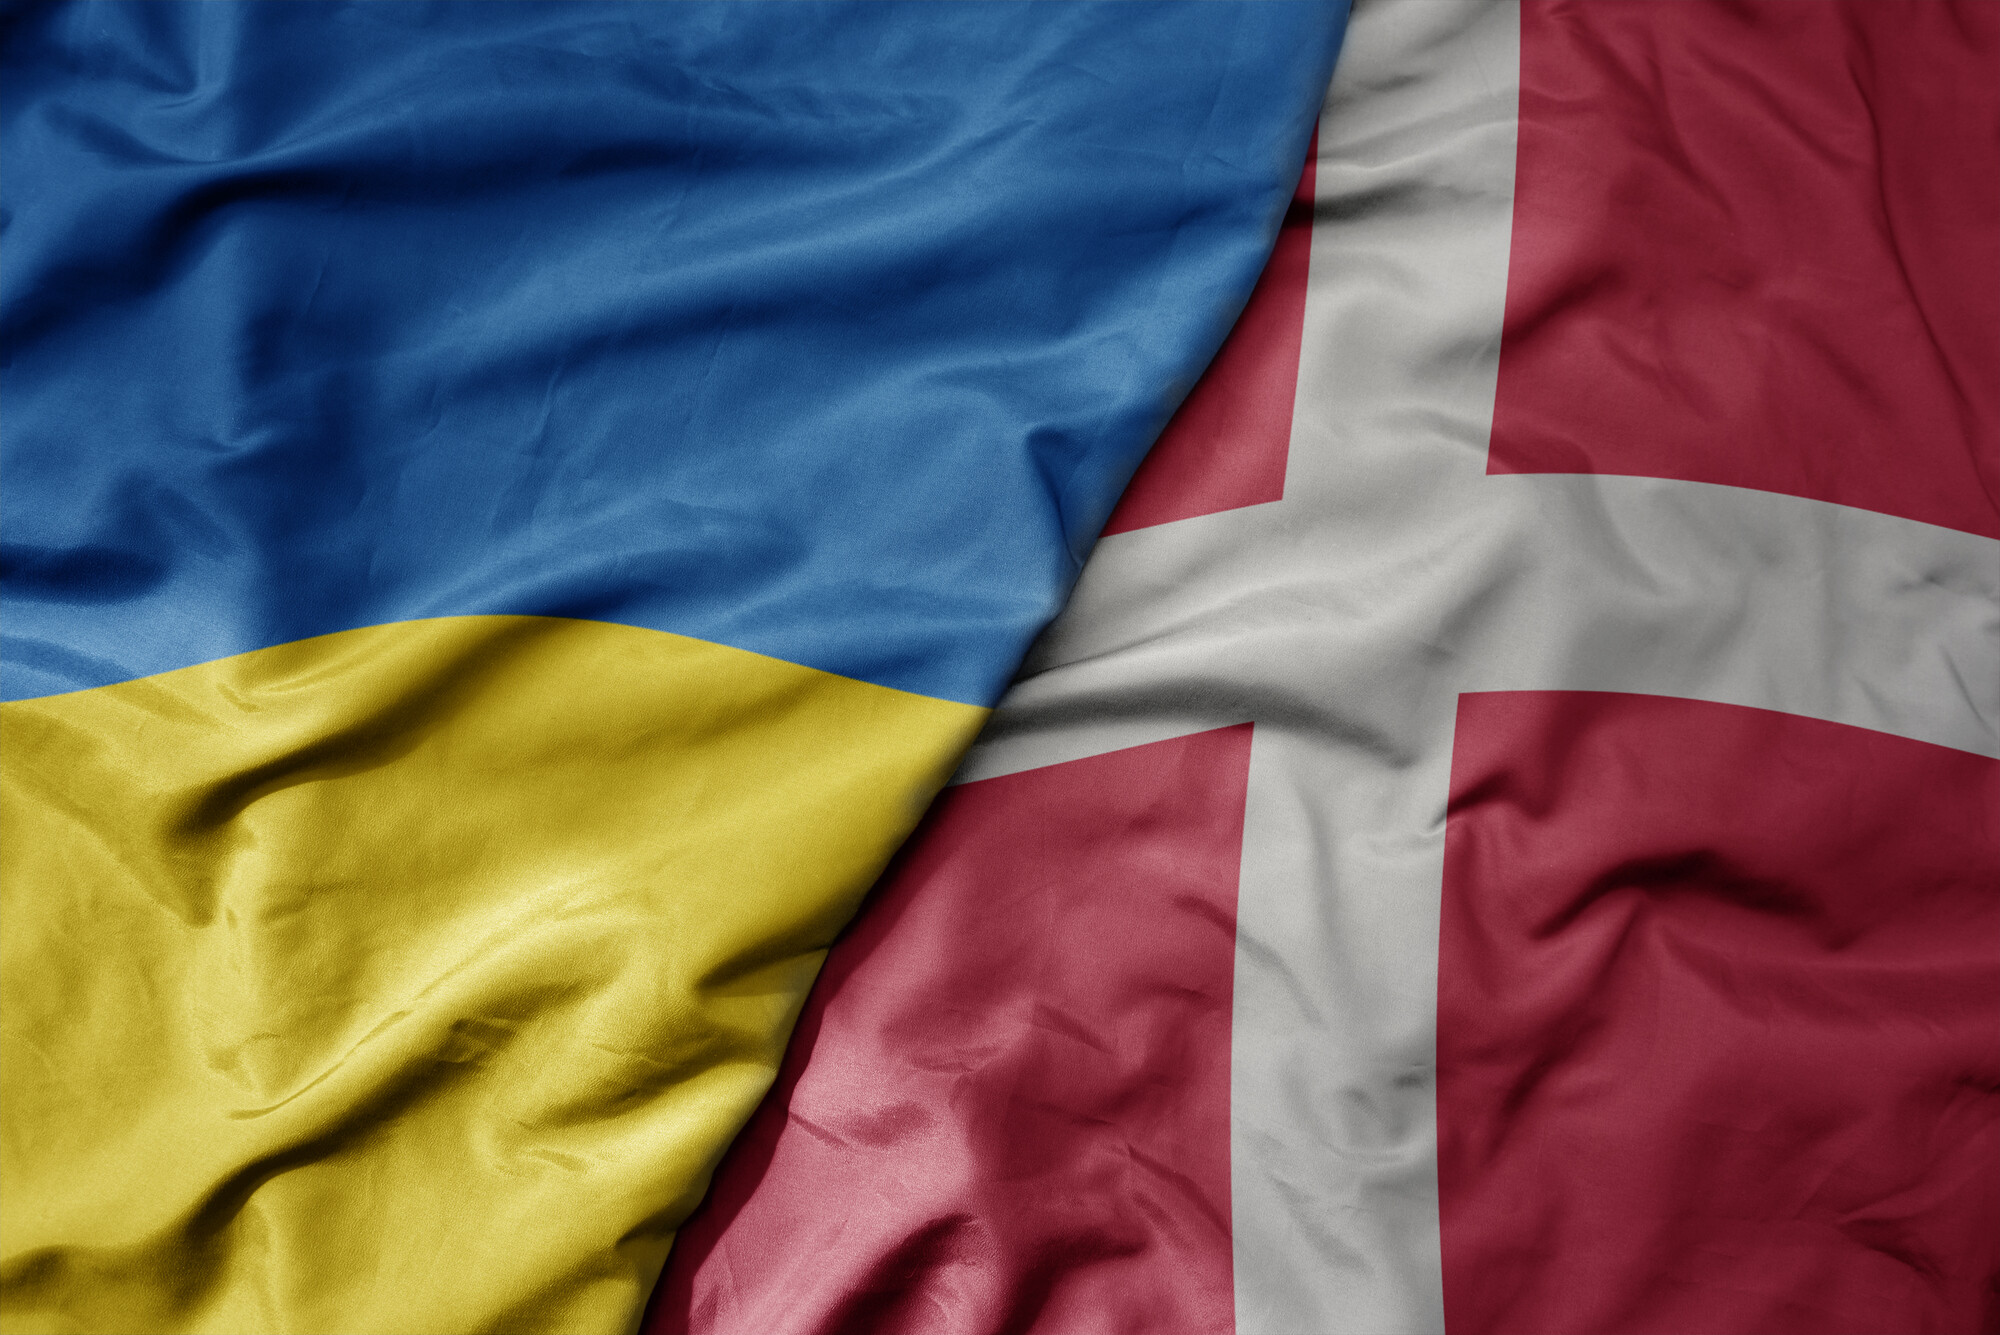 В Киеве открылся форум оборонных индустрий Украины и Дании, анонсировали инвестиции и более тесное сотрудничество